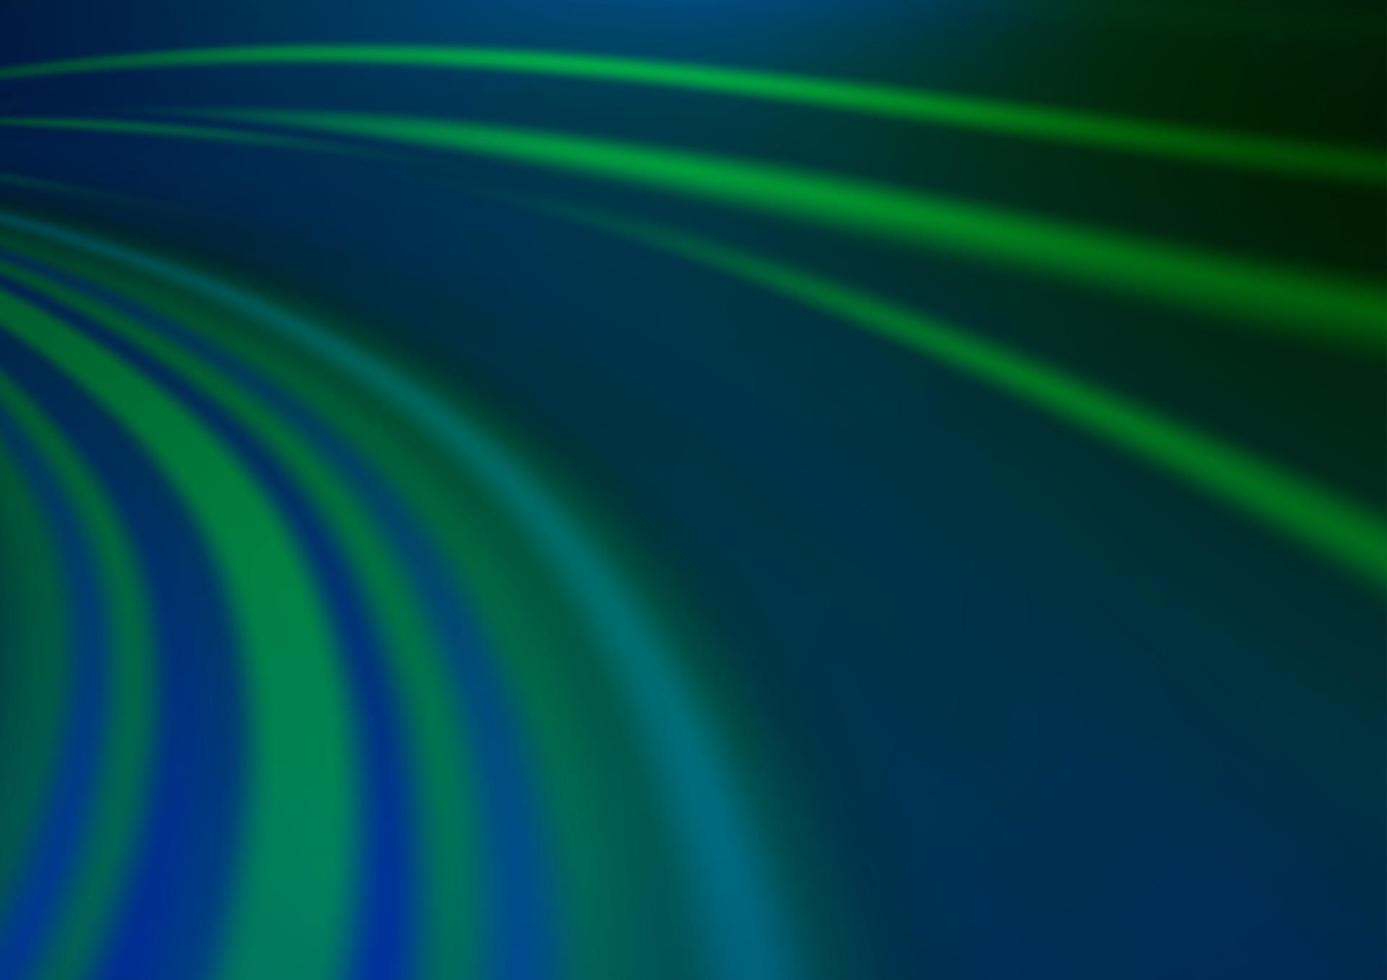 mörkblått, grönt vektormönster med lampformar. vektor